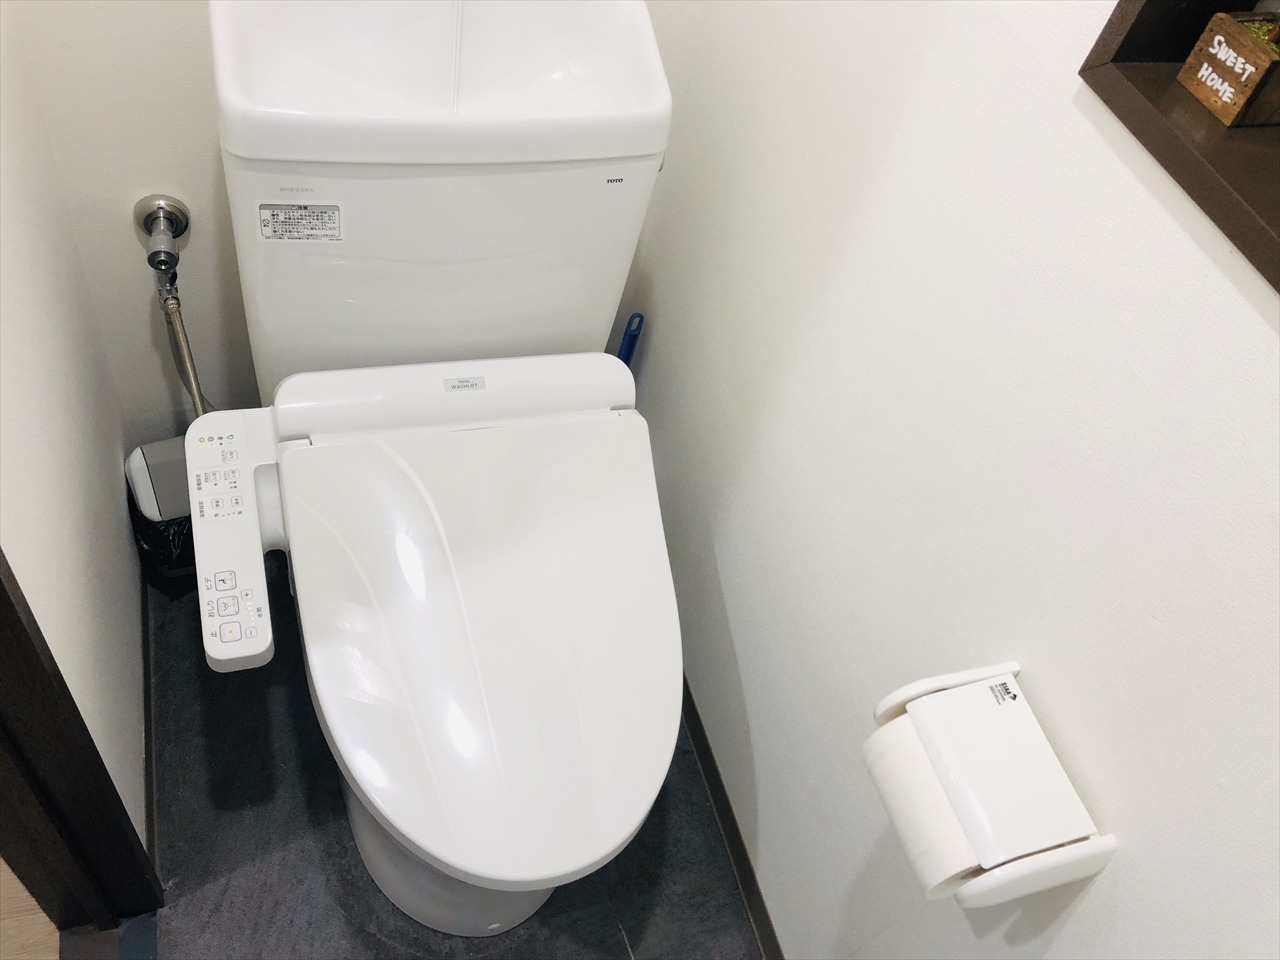  clean toilet 